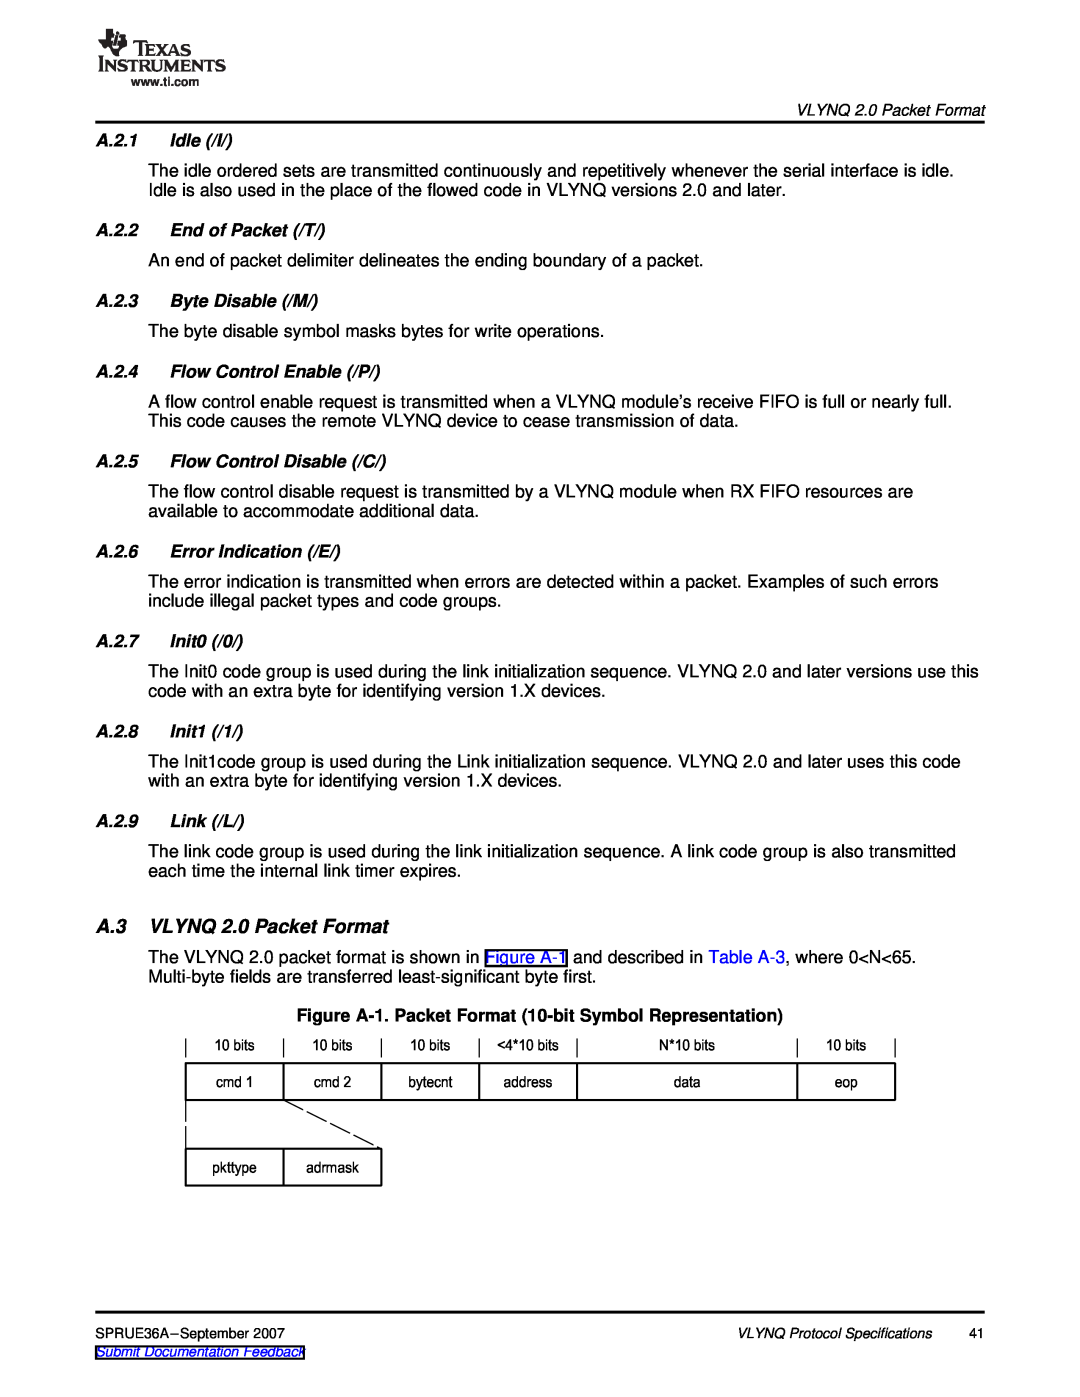 Texas Instruments VLYNQ Port manual A.3 VLYNQ 2.0 Packet Format, Figure A-1. Packet Format 10-bit Symbol Representation 